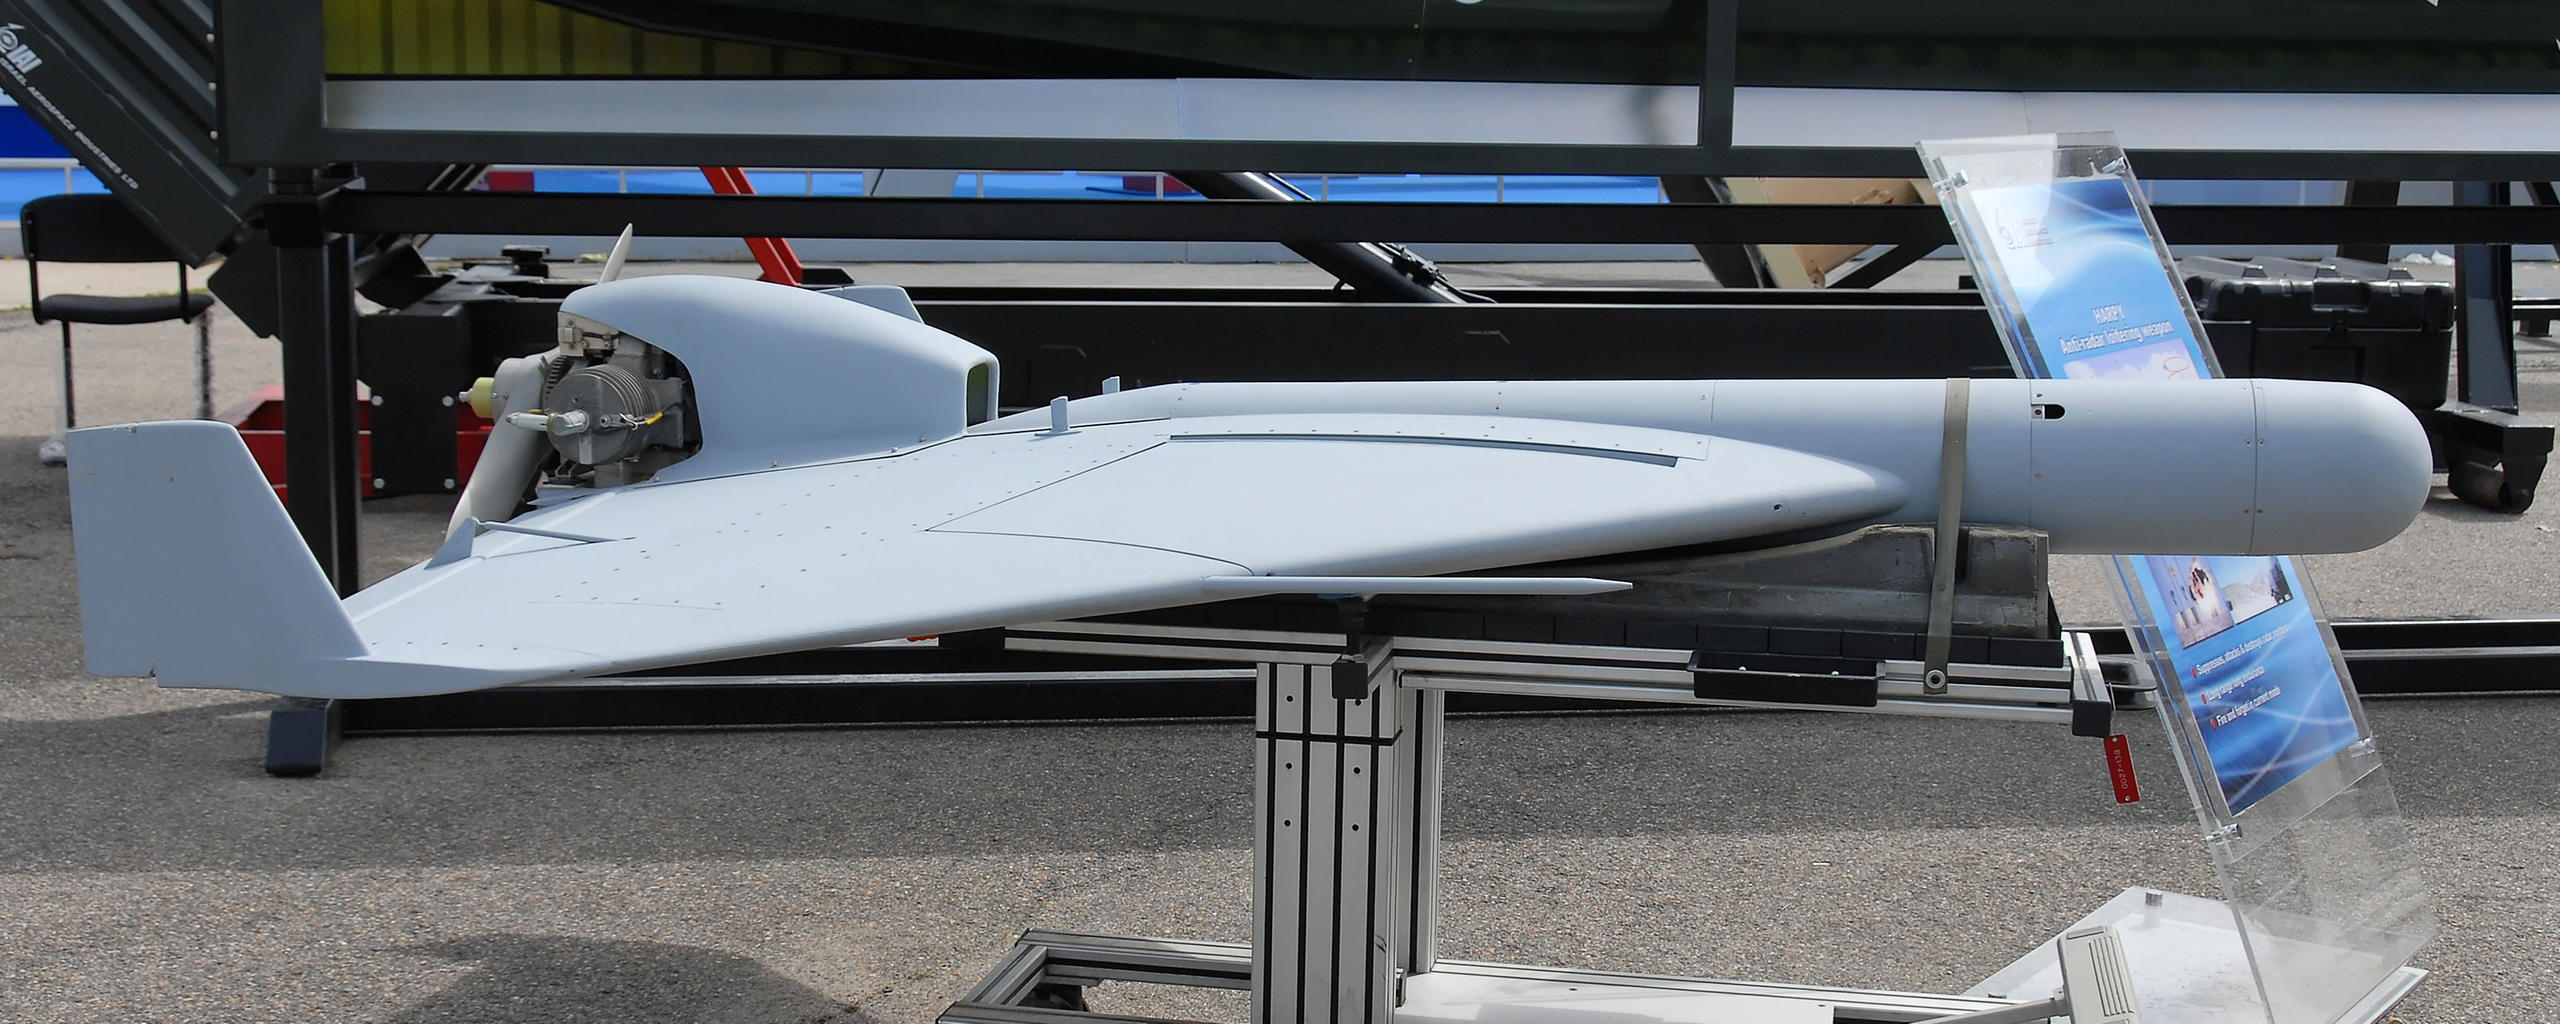 Drohnen-Rakete, die autonom am Boden starten kann